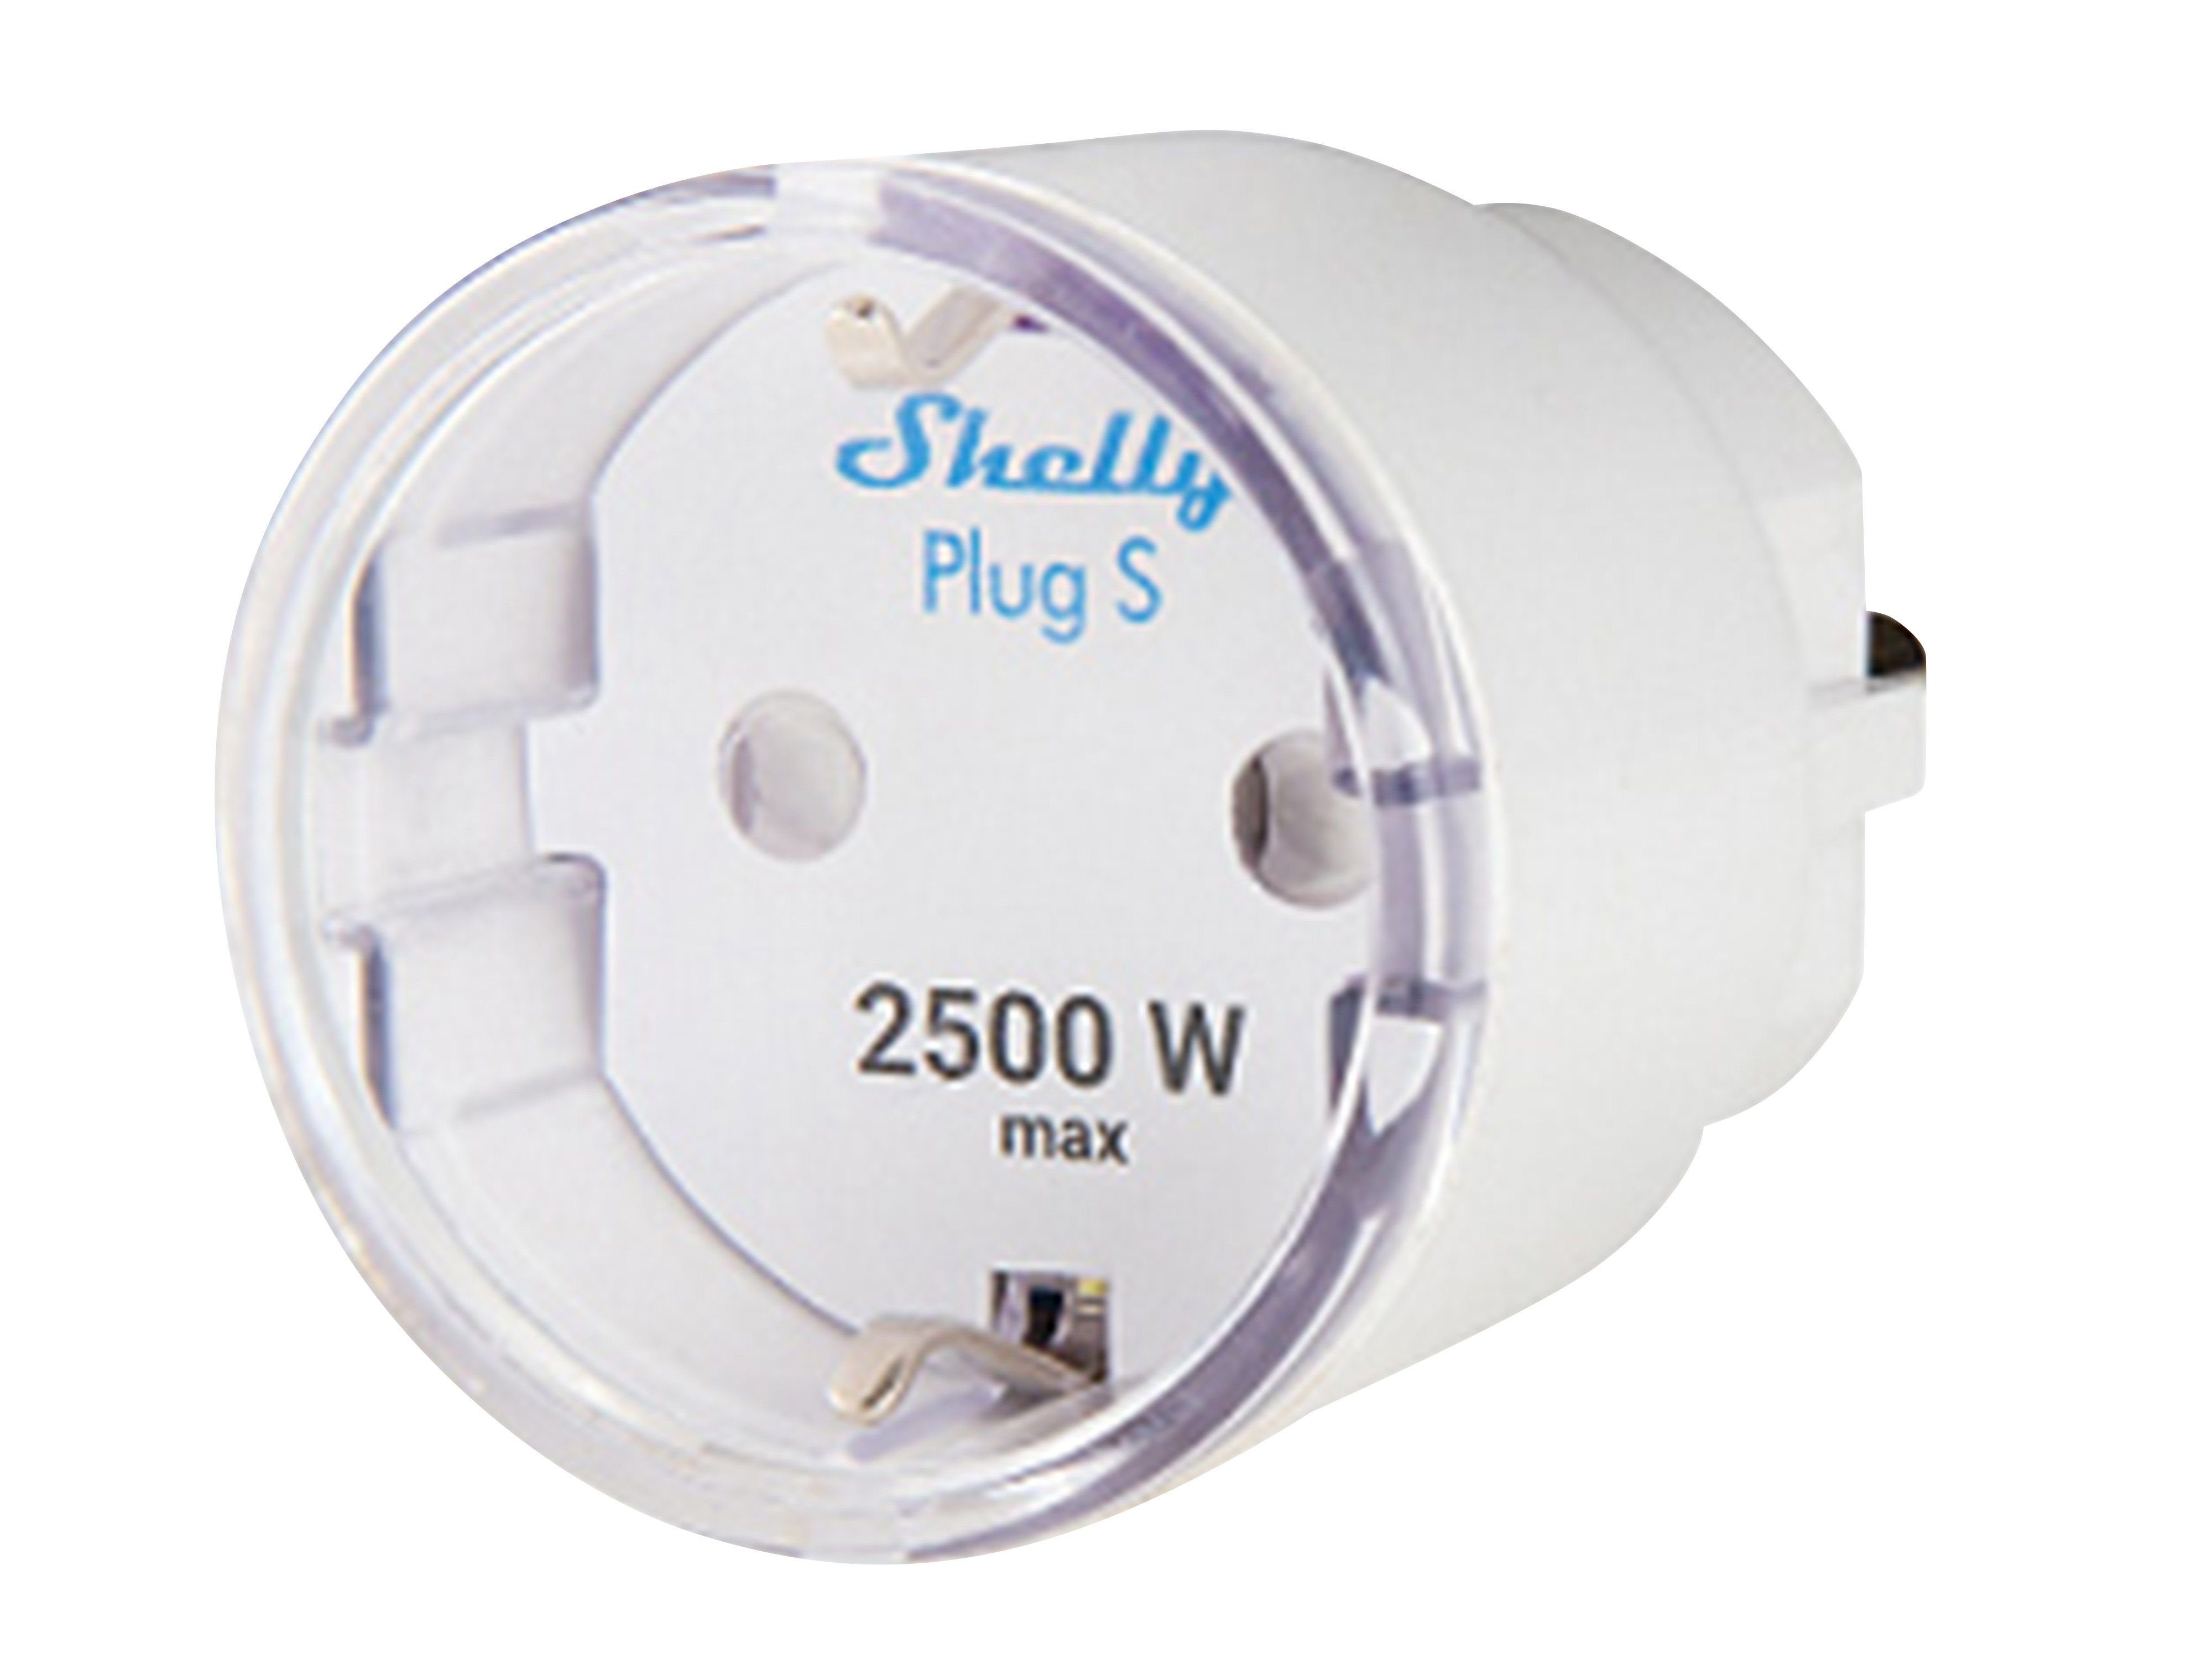 Plug SHELLY WLAN-Steckdose 12 Plus WLAN-Steckdose Shelly S, A